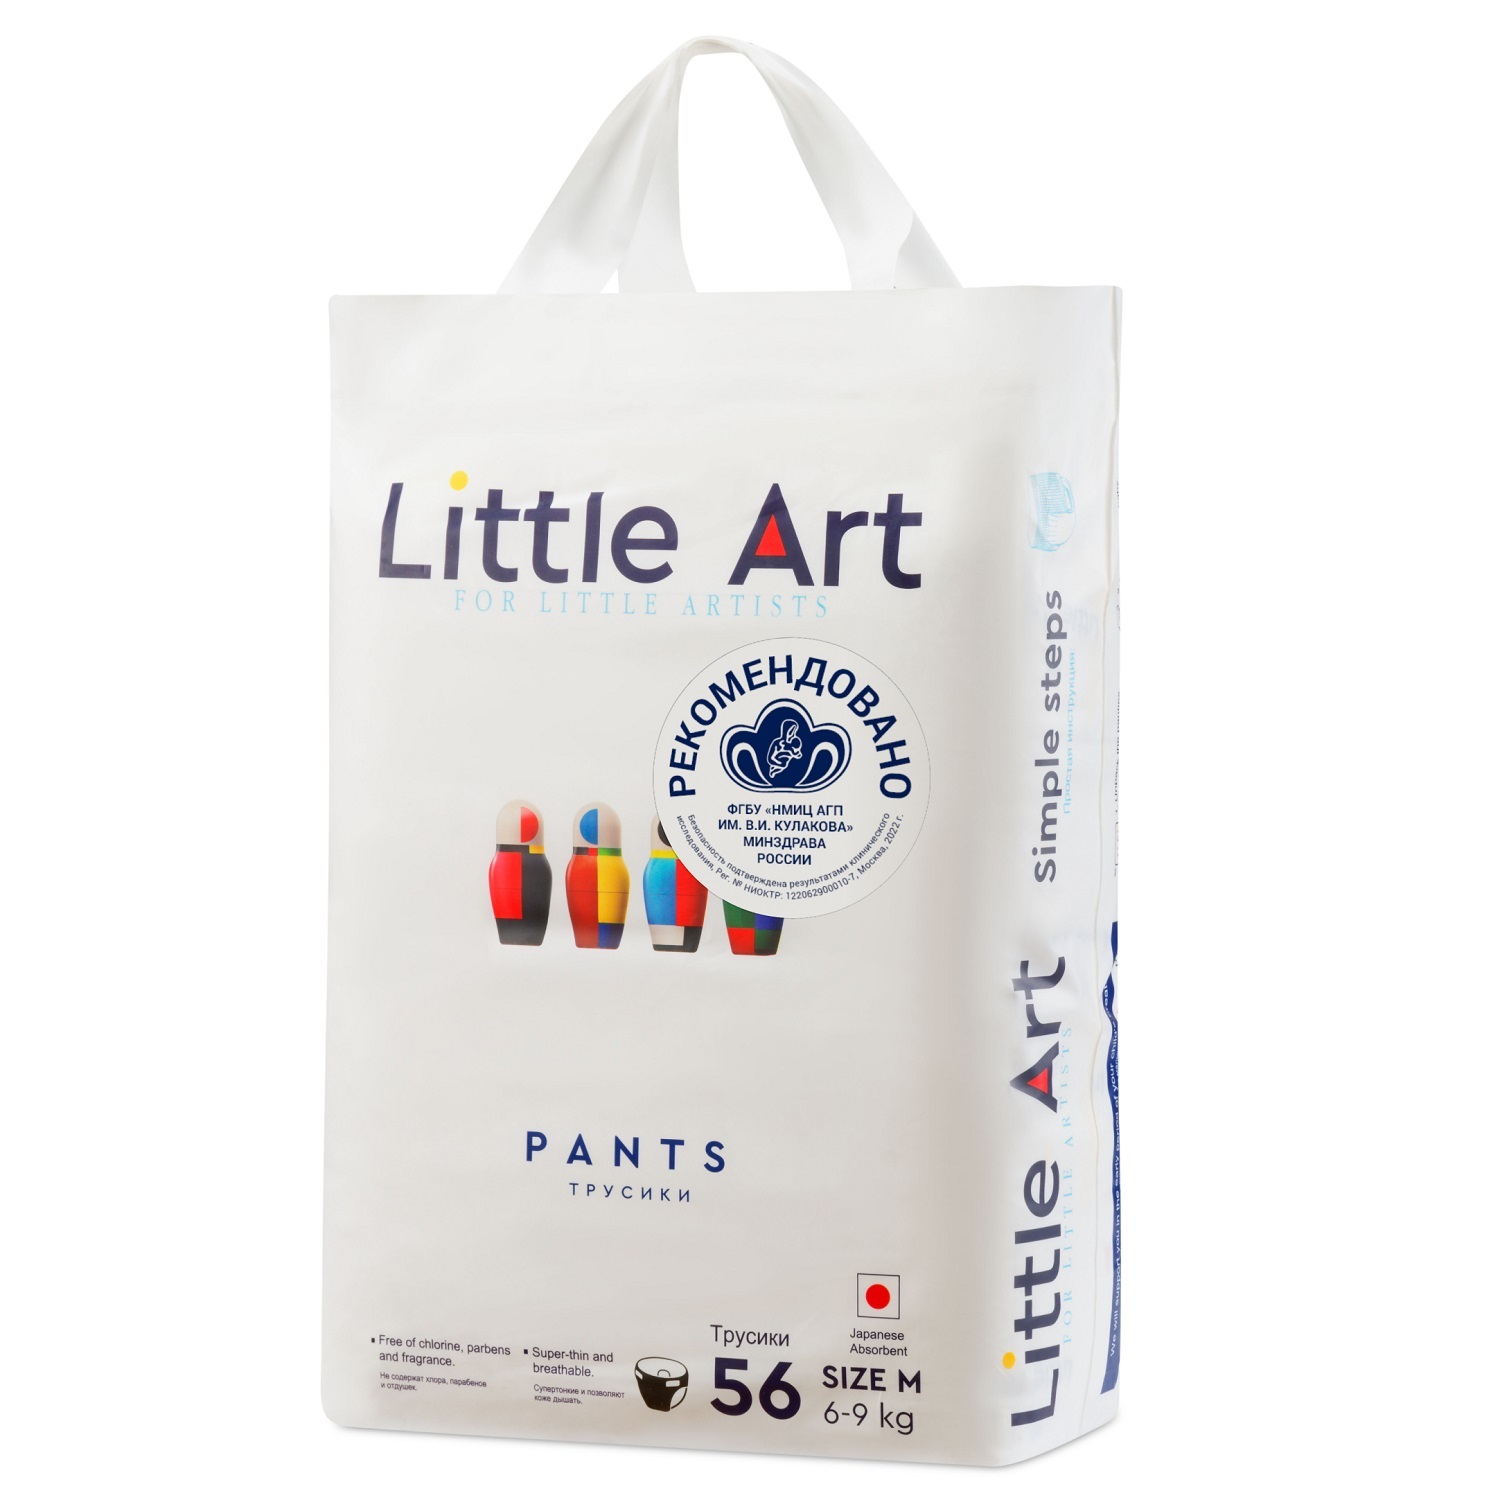 Купить Little Art Детские трусики-подгузники размер M 6-9 кг, 56 шт (Little Art, Трусики-подгузники), Китай